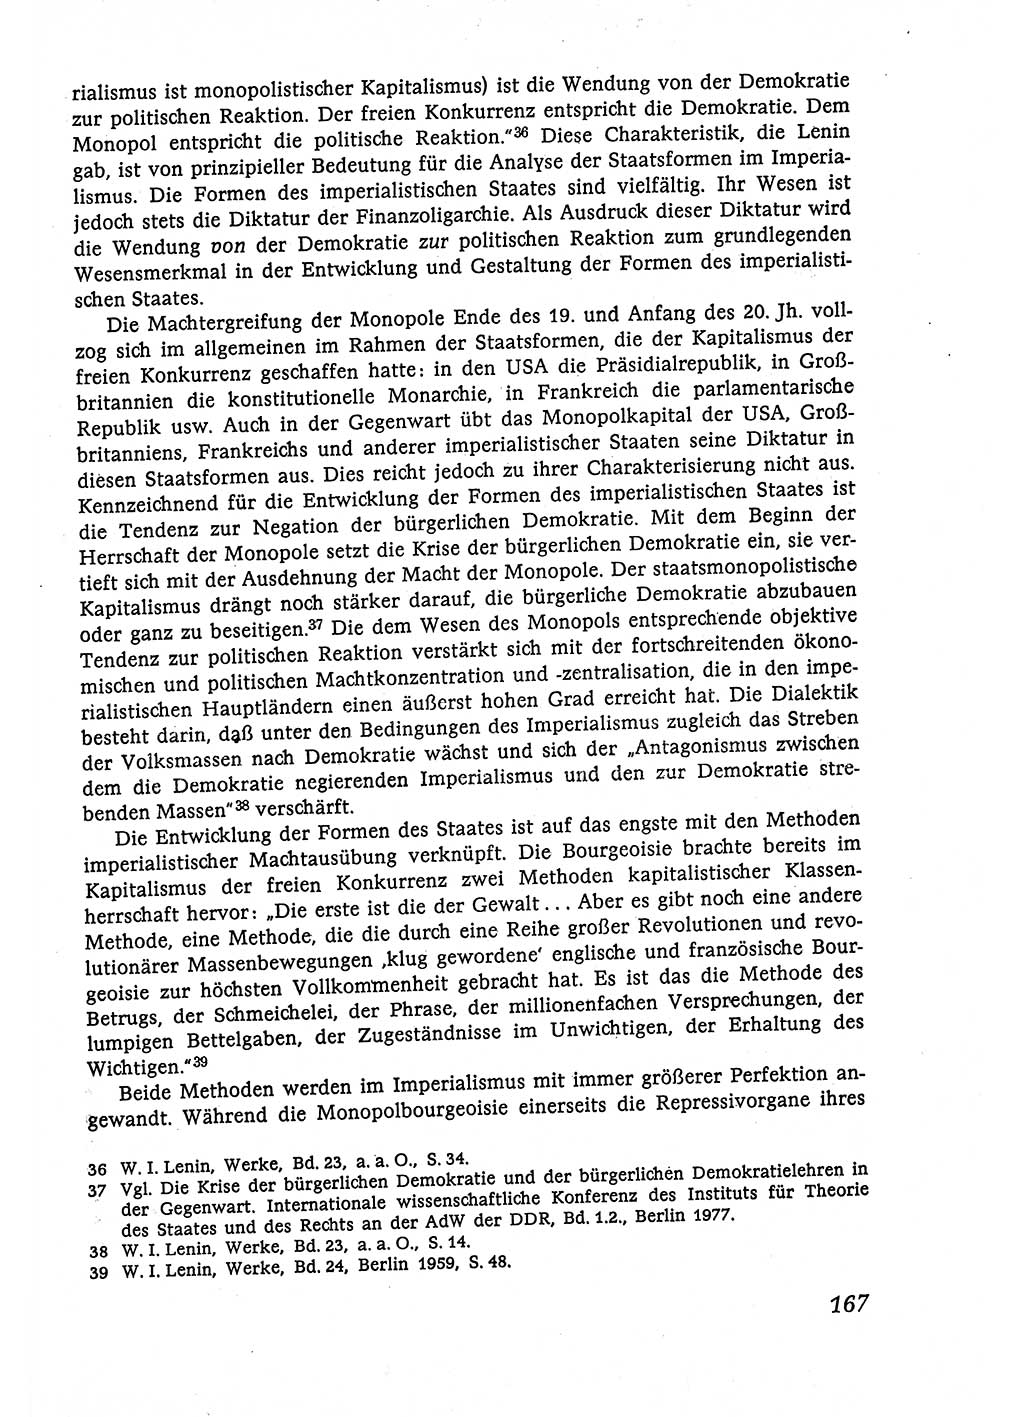 Marxistisch-leninistische (ML) Staats- und Rechtstheorie [Deutsche Demokratische Republik (DDR)], Lehrbuch 1980, Seite 167 (ML St.-R.-Th. DDR Lb. 1980, S. 167)